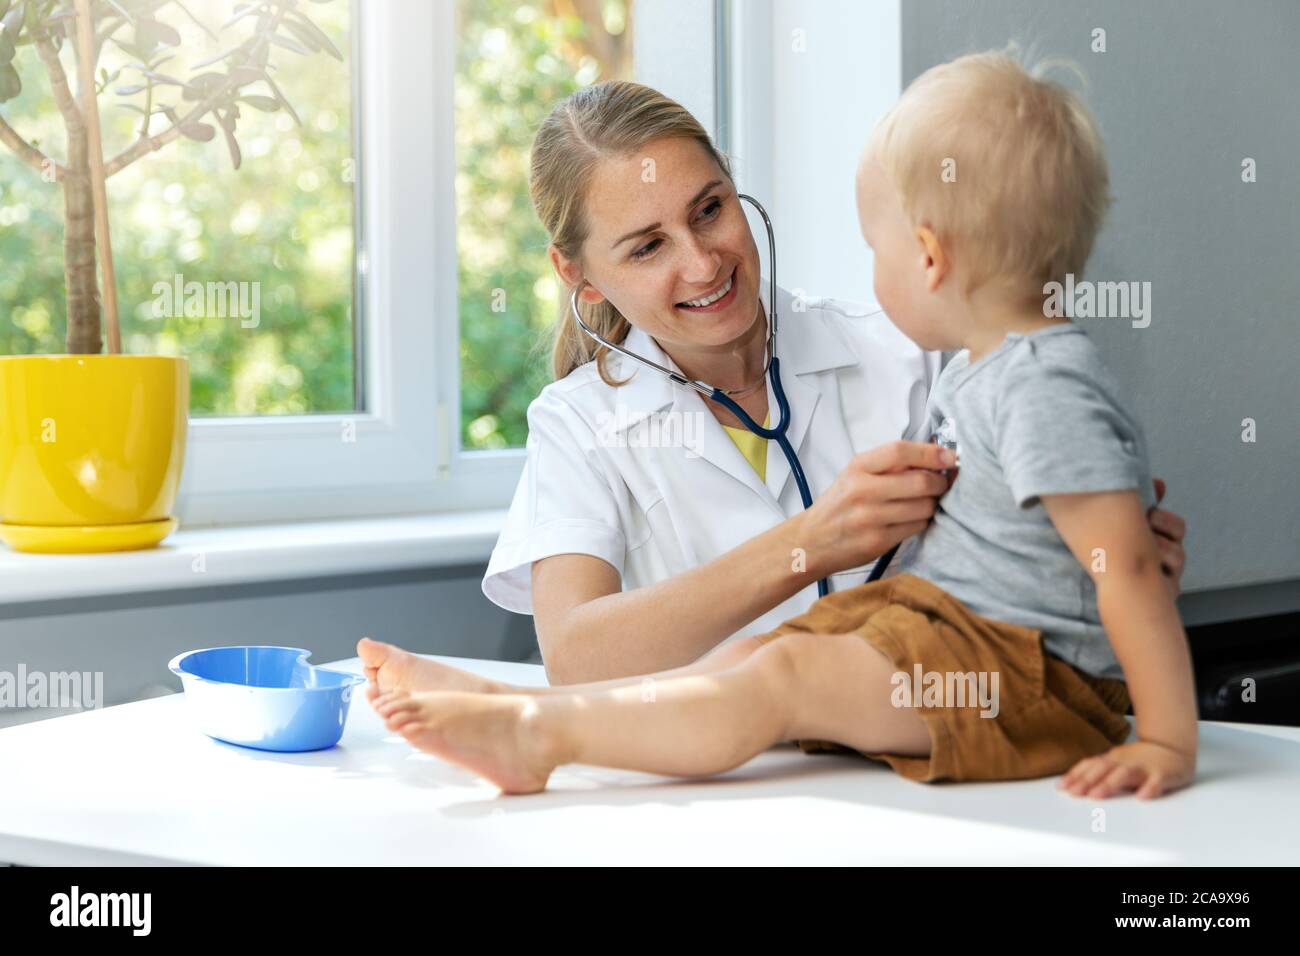 dottore che esamina un bambino paziente con stetoscopio in studio clinico, ragazzino a appuntamento pediatra Foto Stock